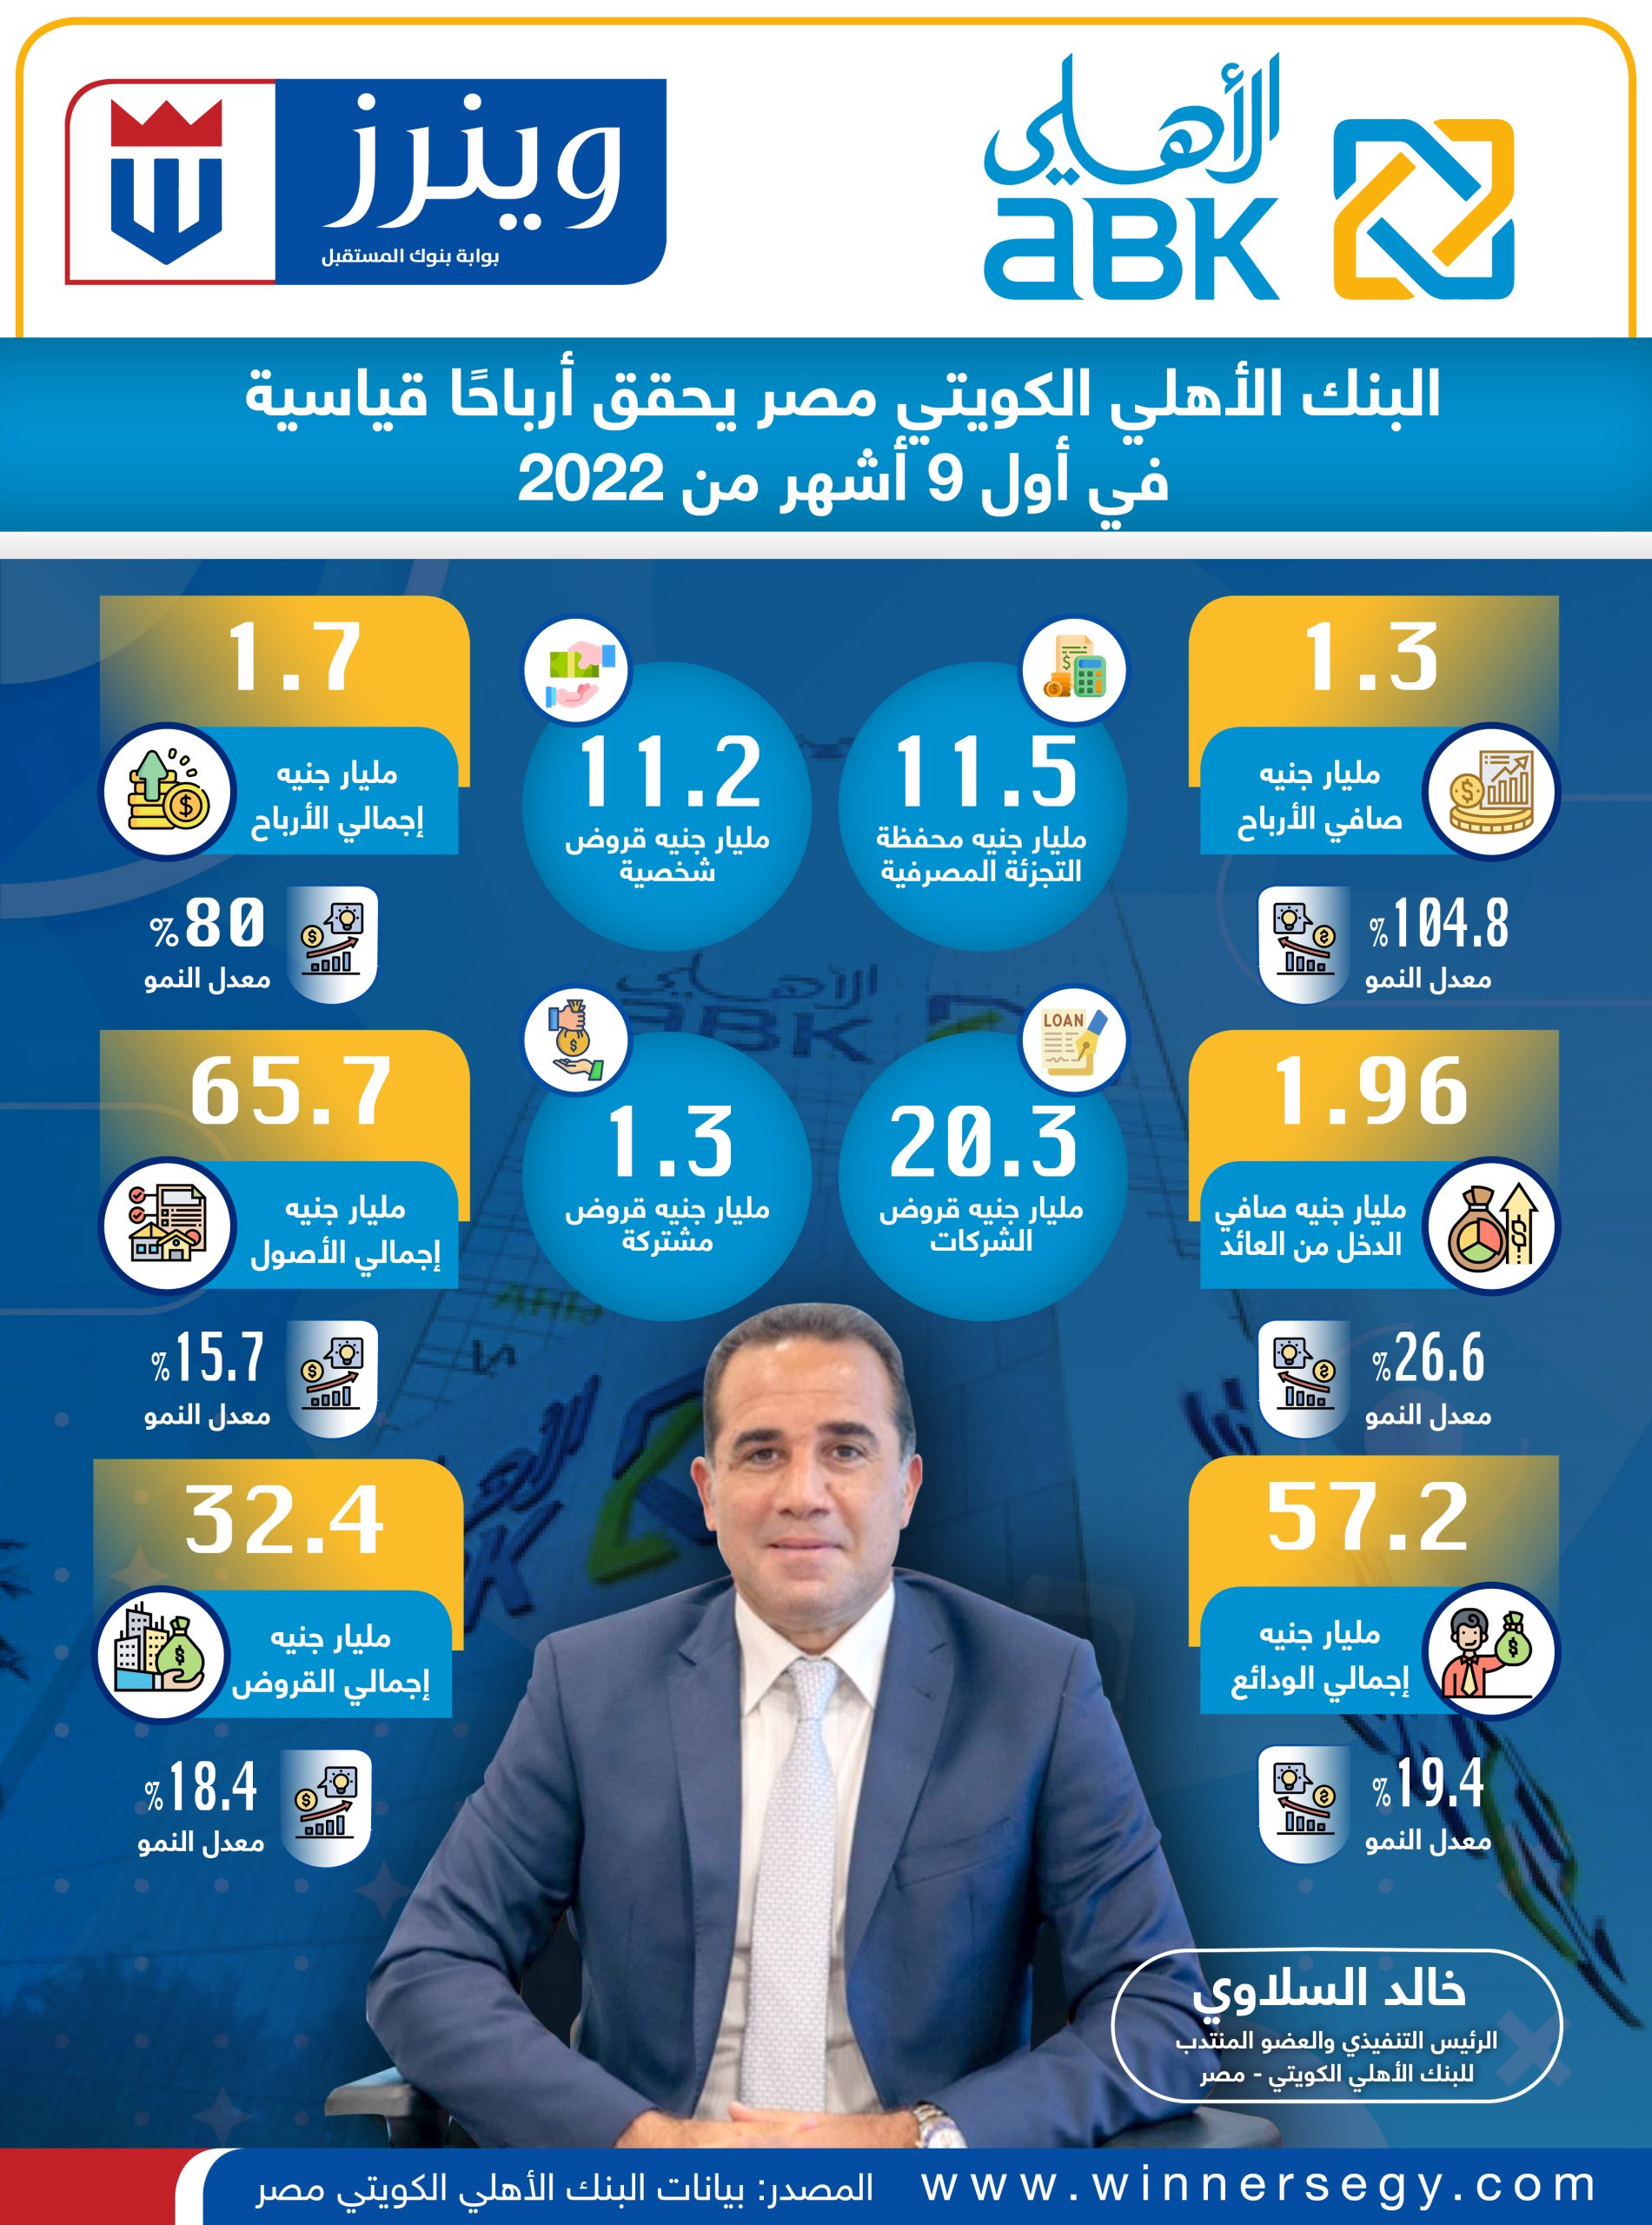 إنفوجرافيك: البنك الأهلي الكويتي مصر يحقق أرباحًا قياسية في أول 9 أشهر